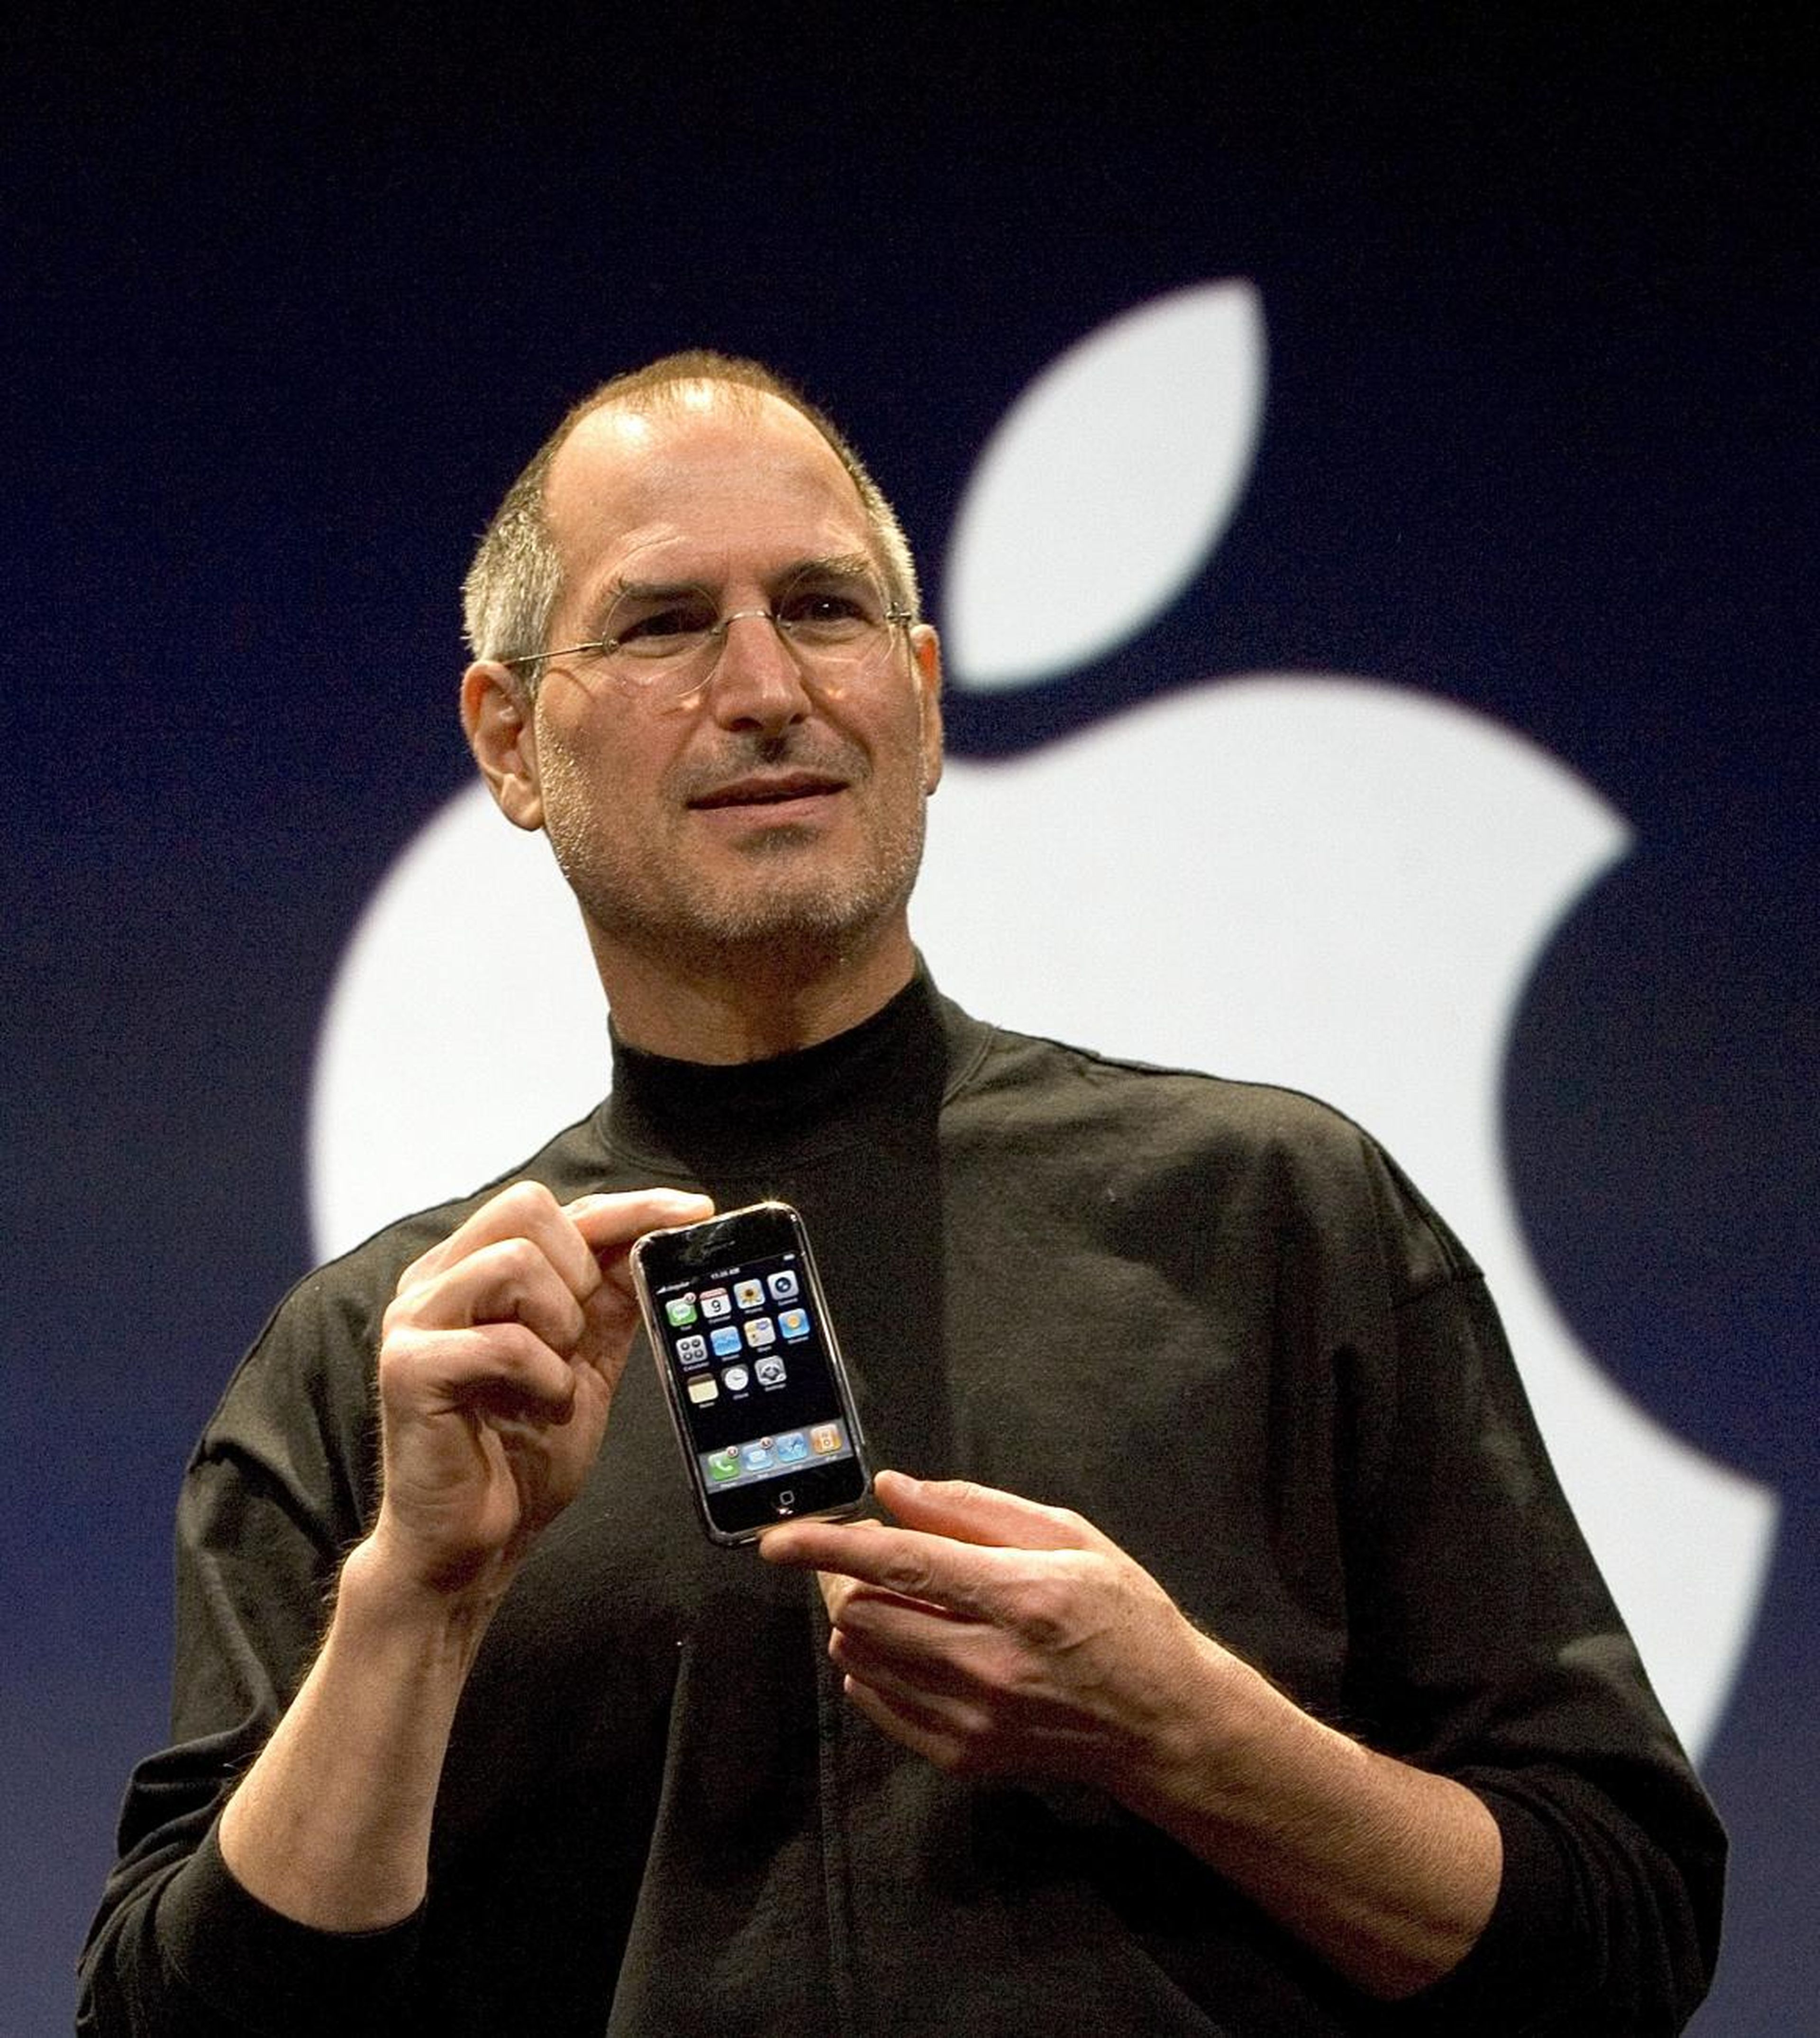 Estas son las predicciones que Steve Jobs hizo a lo largo de su vida y que se han cumplido